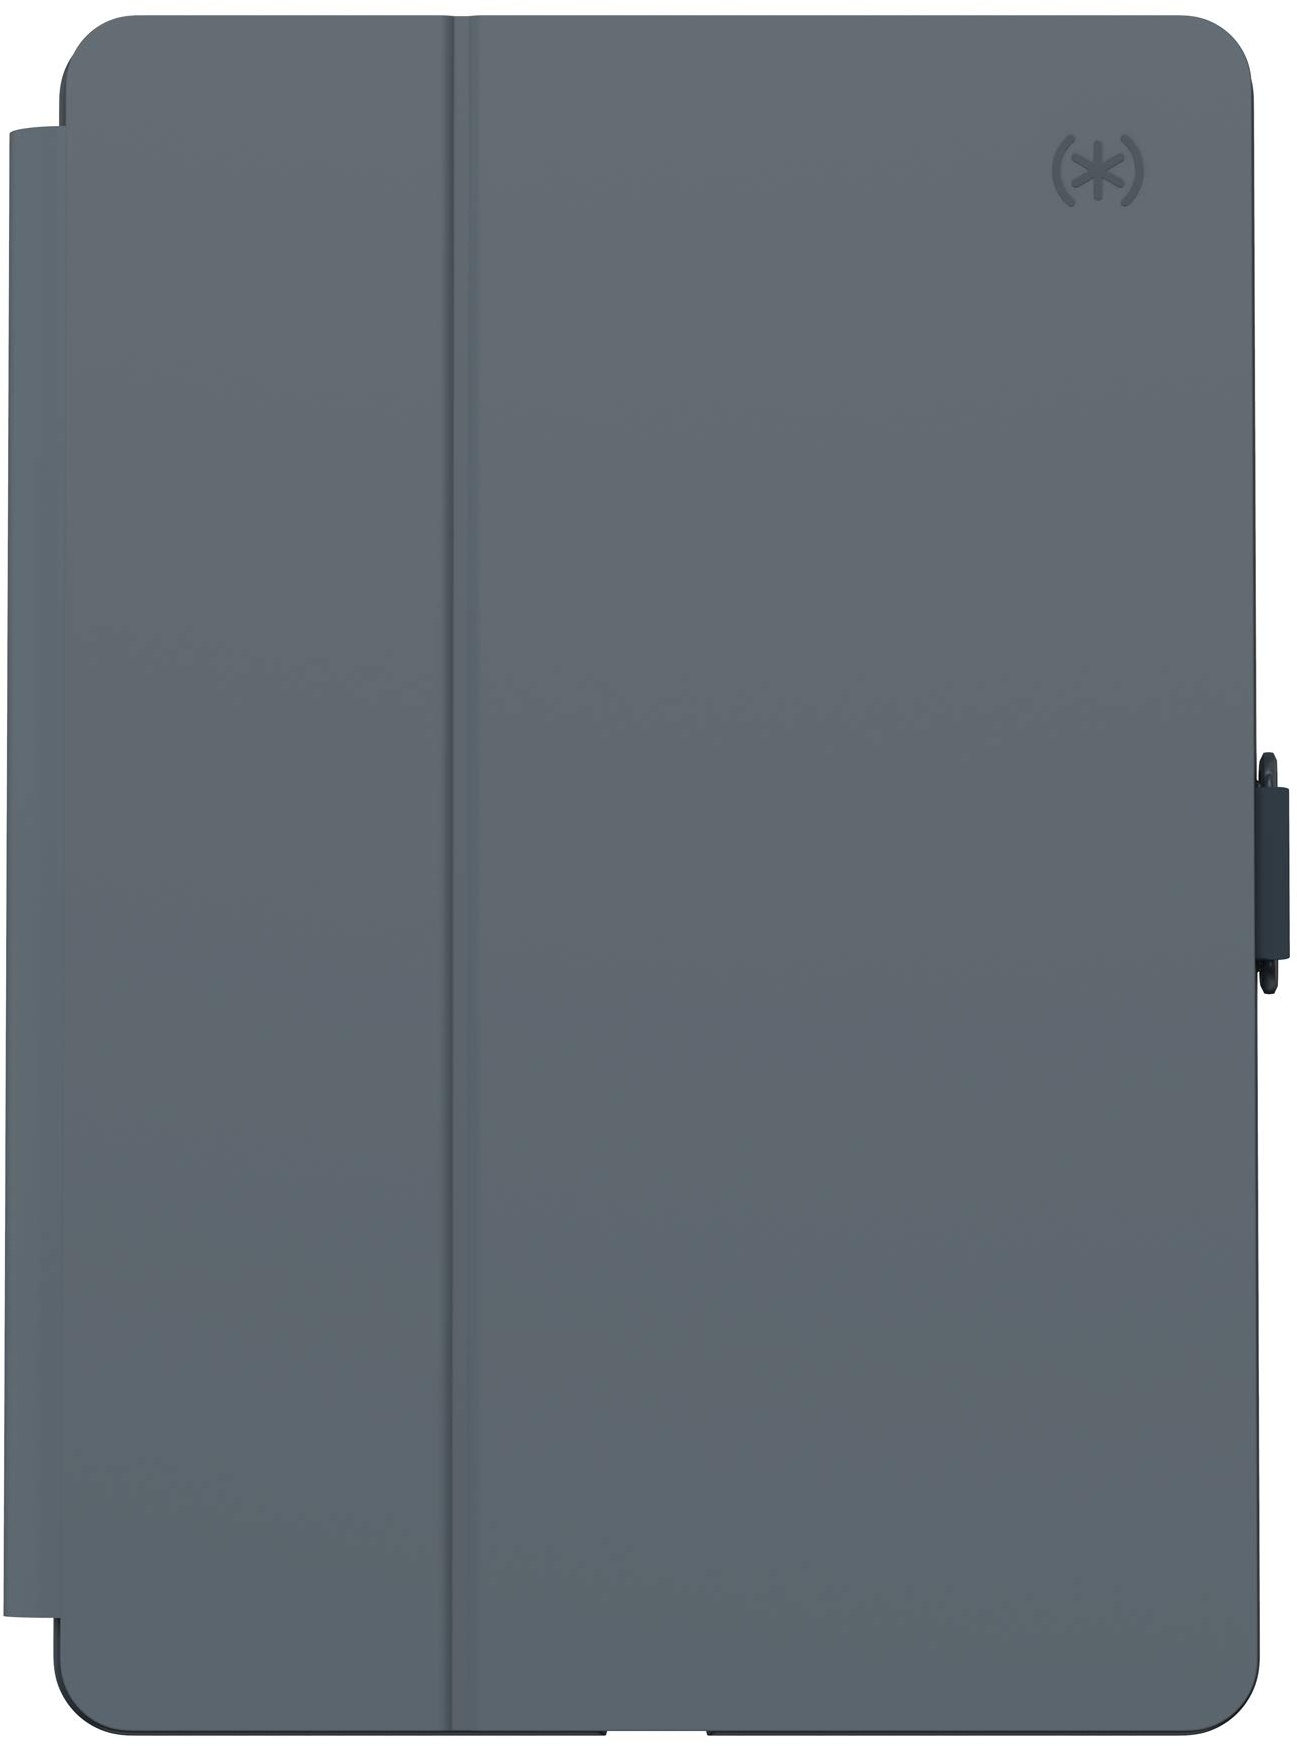 Speck Produkte BalanceFolio iPad 10,2 Zoll Hülle und Ständer (2019), Stormy Grey/Charcoal Grey